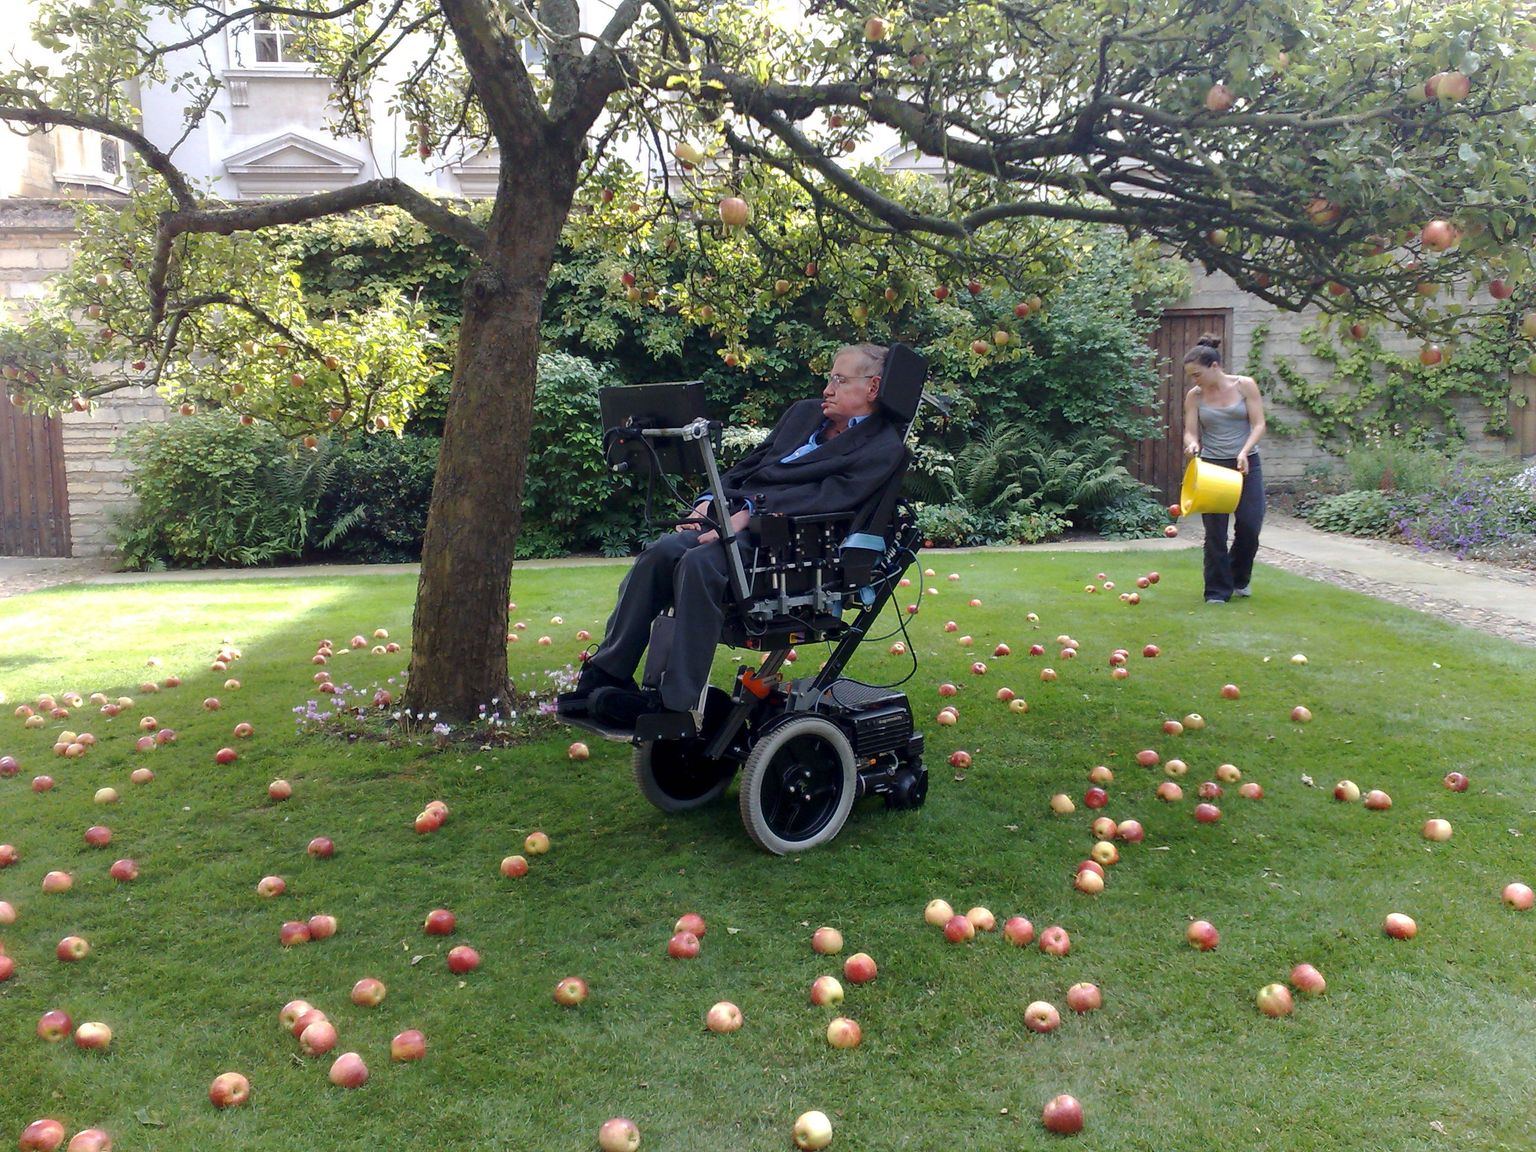 Stephen Hawking dokumentaalfilmi võtetel, taustal Newtoni kuulsa õunapuu järelematkimine. Ühes isikus said kokku suur teadlane, suur humanist ja vaieldamatult ka suur meediatäht.